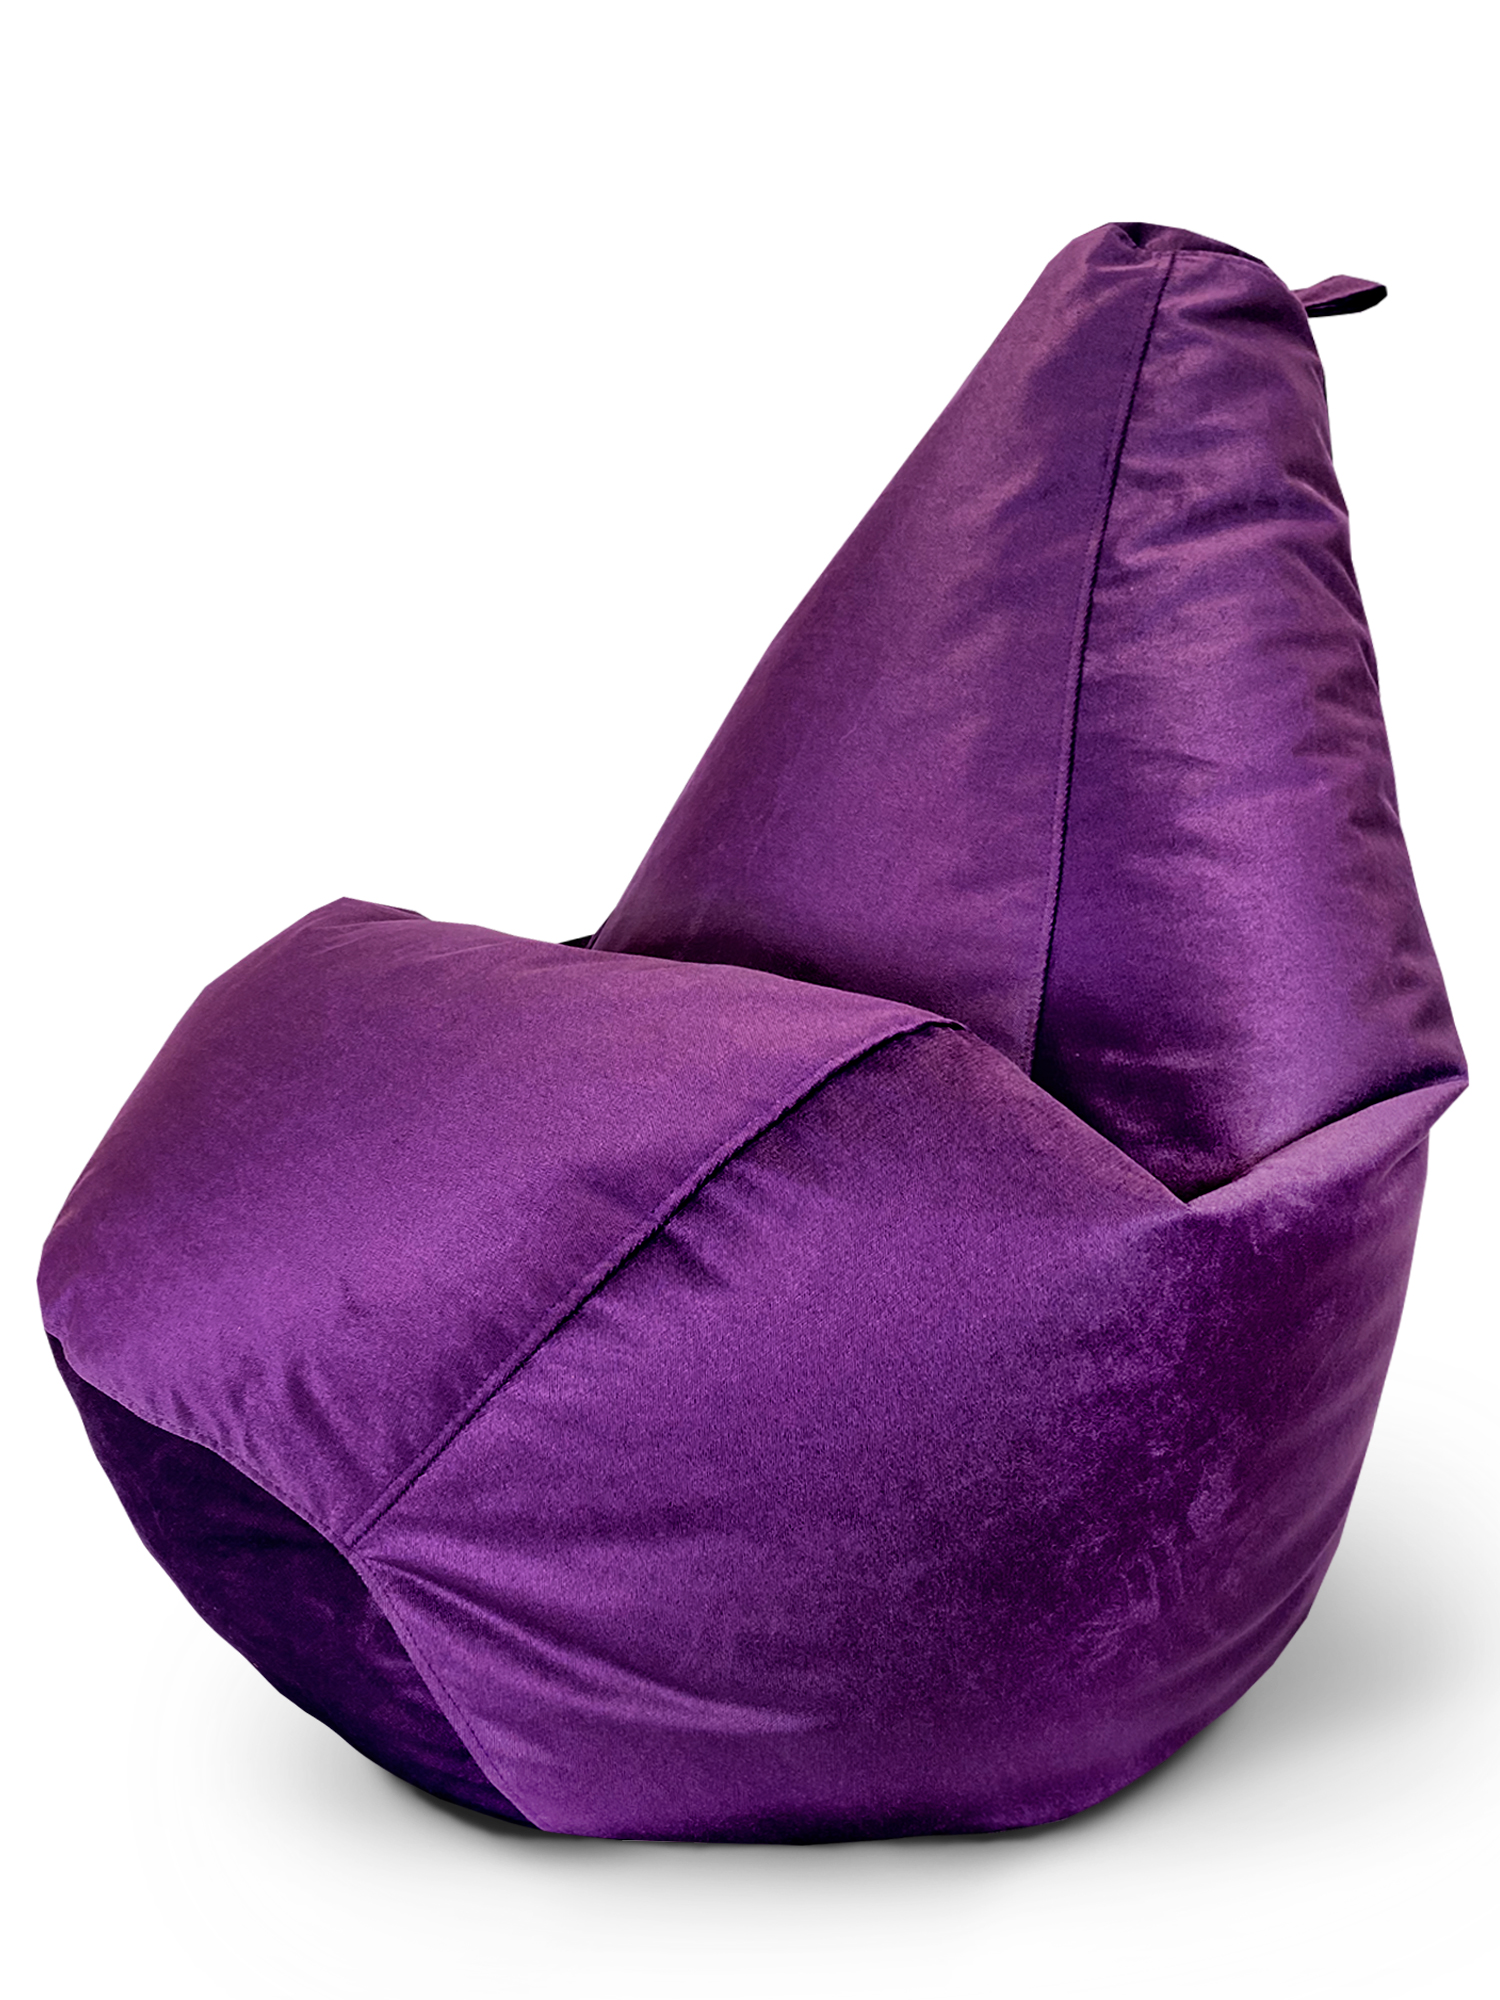 фото Кресло-мешок onpuff пуфик груша, размер xxl, фиолетовый велюр